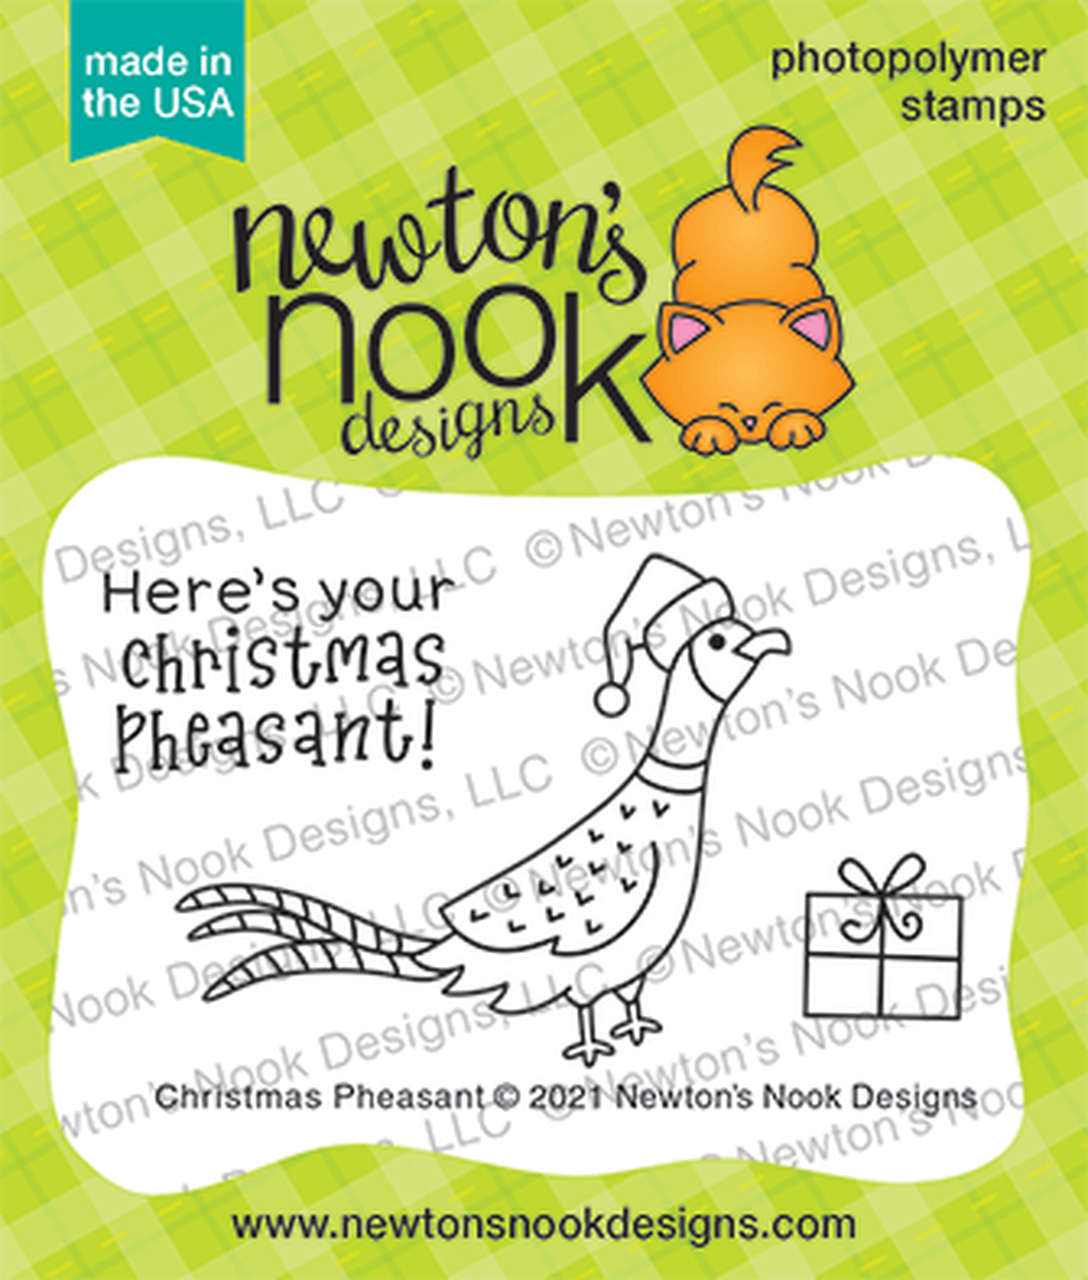 Newton's Nook Christmas Pheasant